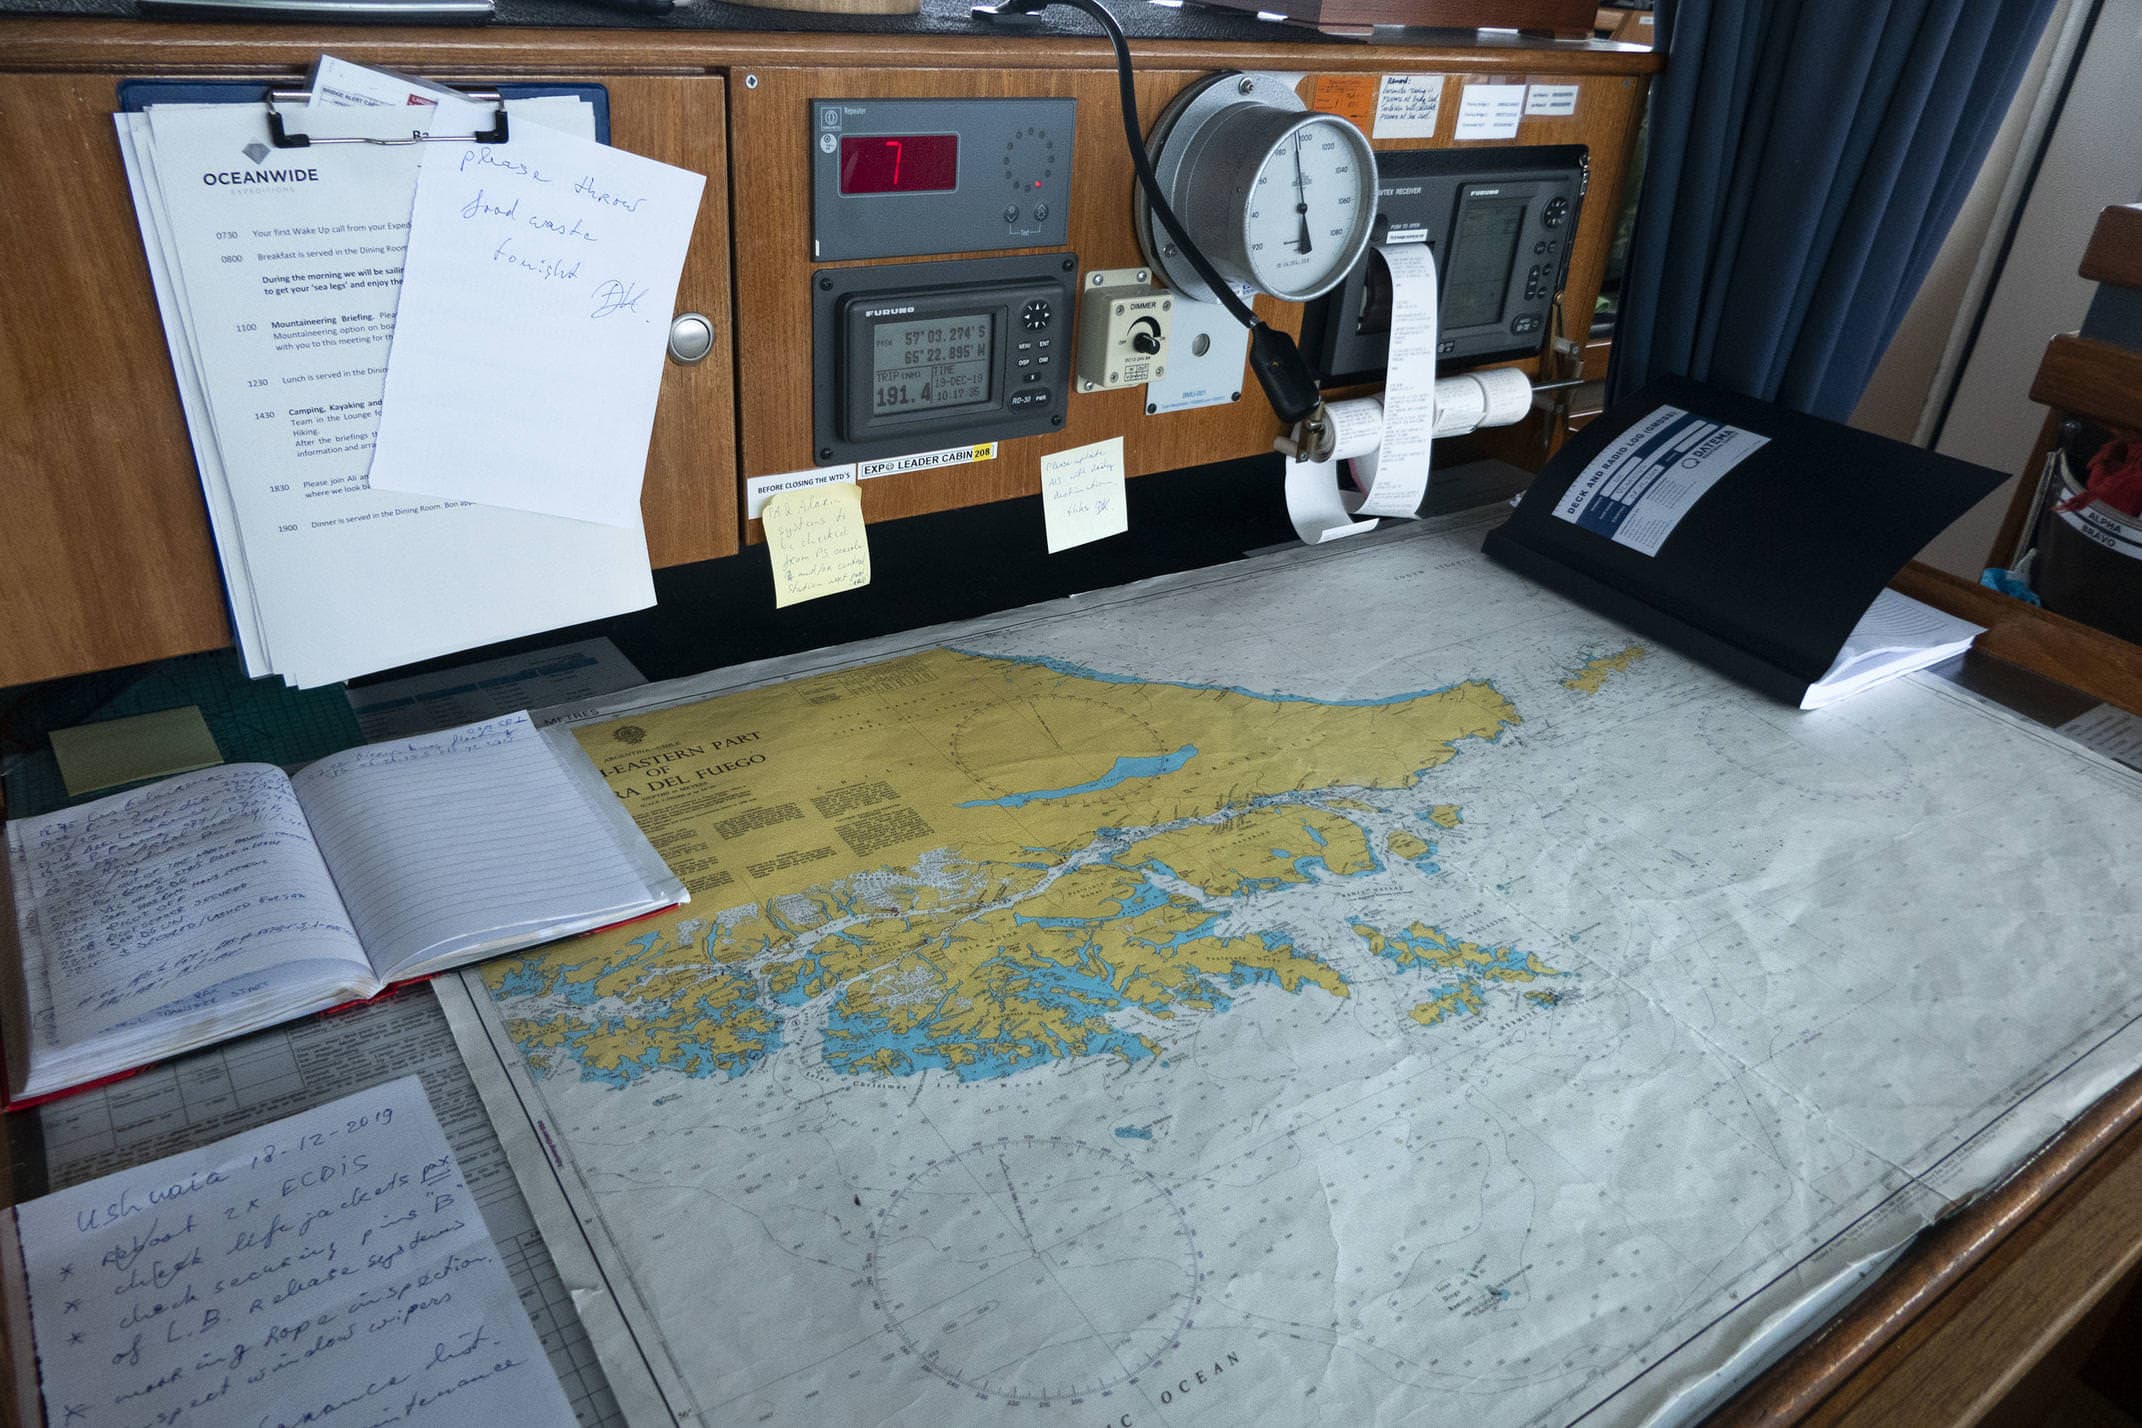 Antarctica plancius boat maps c diego